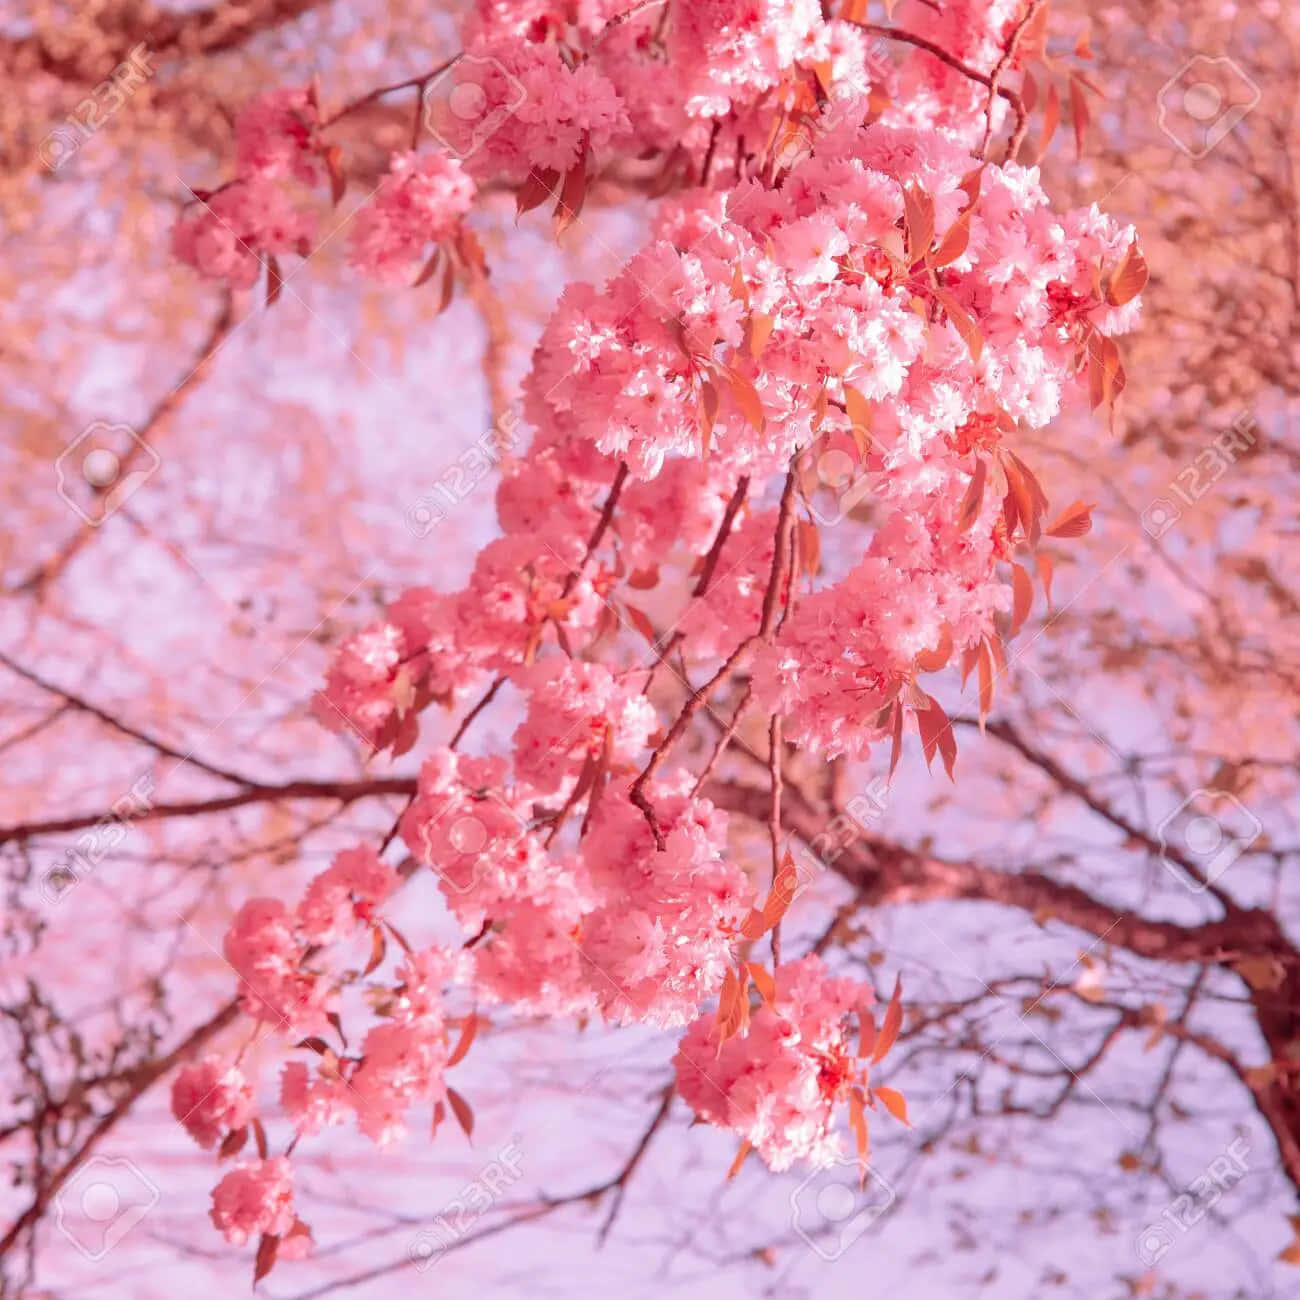 Njutav Skönheten Hos Sakurablommor När Körsbärsträden Blommar! Wallpaper